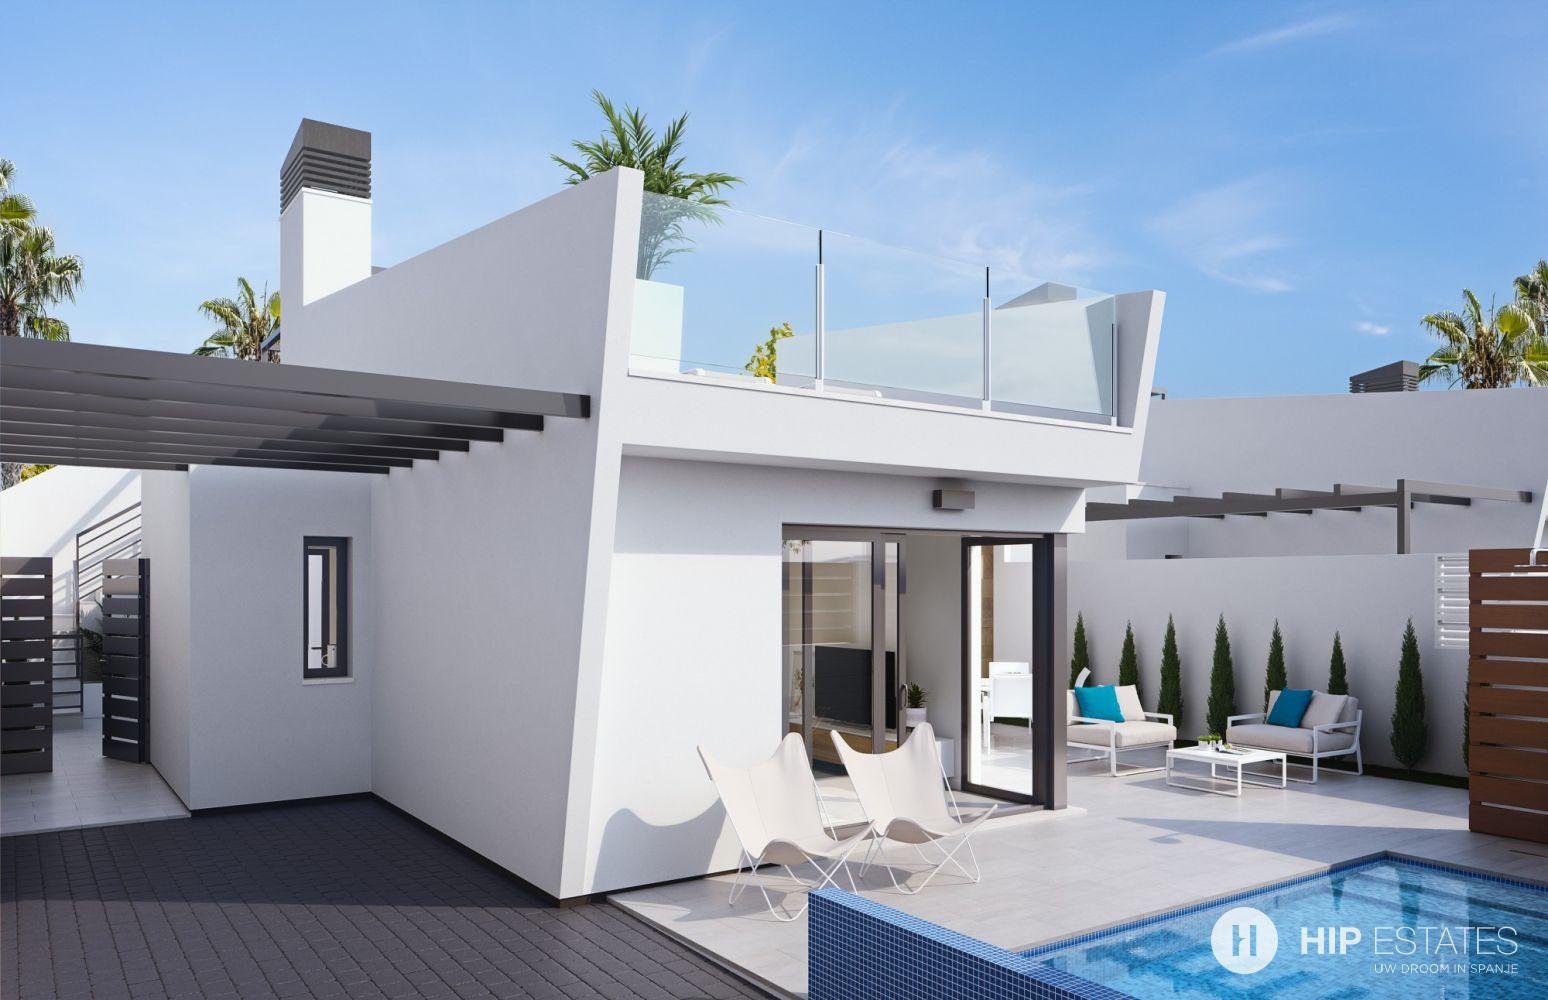 Moderne halfopen woningen met privé zwembad, Murcia, Calida, Spanje | HIP Estates Tweede verblijf in Spanje, huis kopen